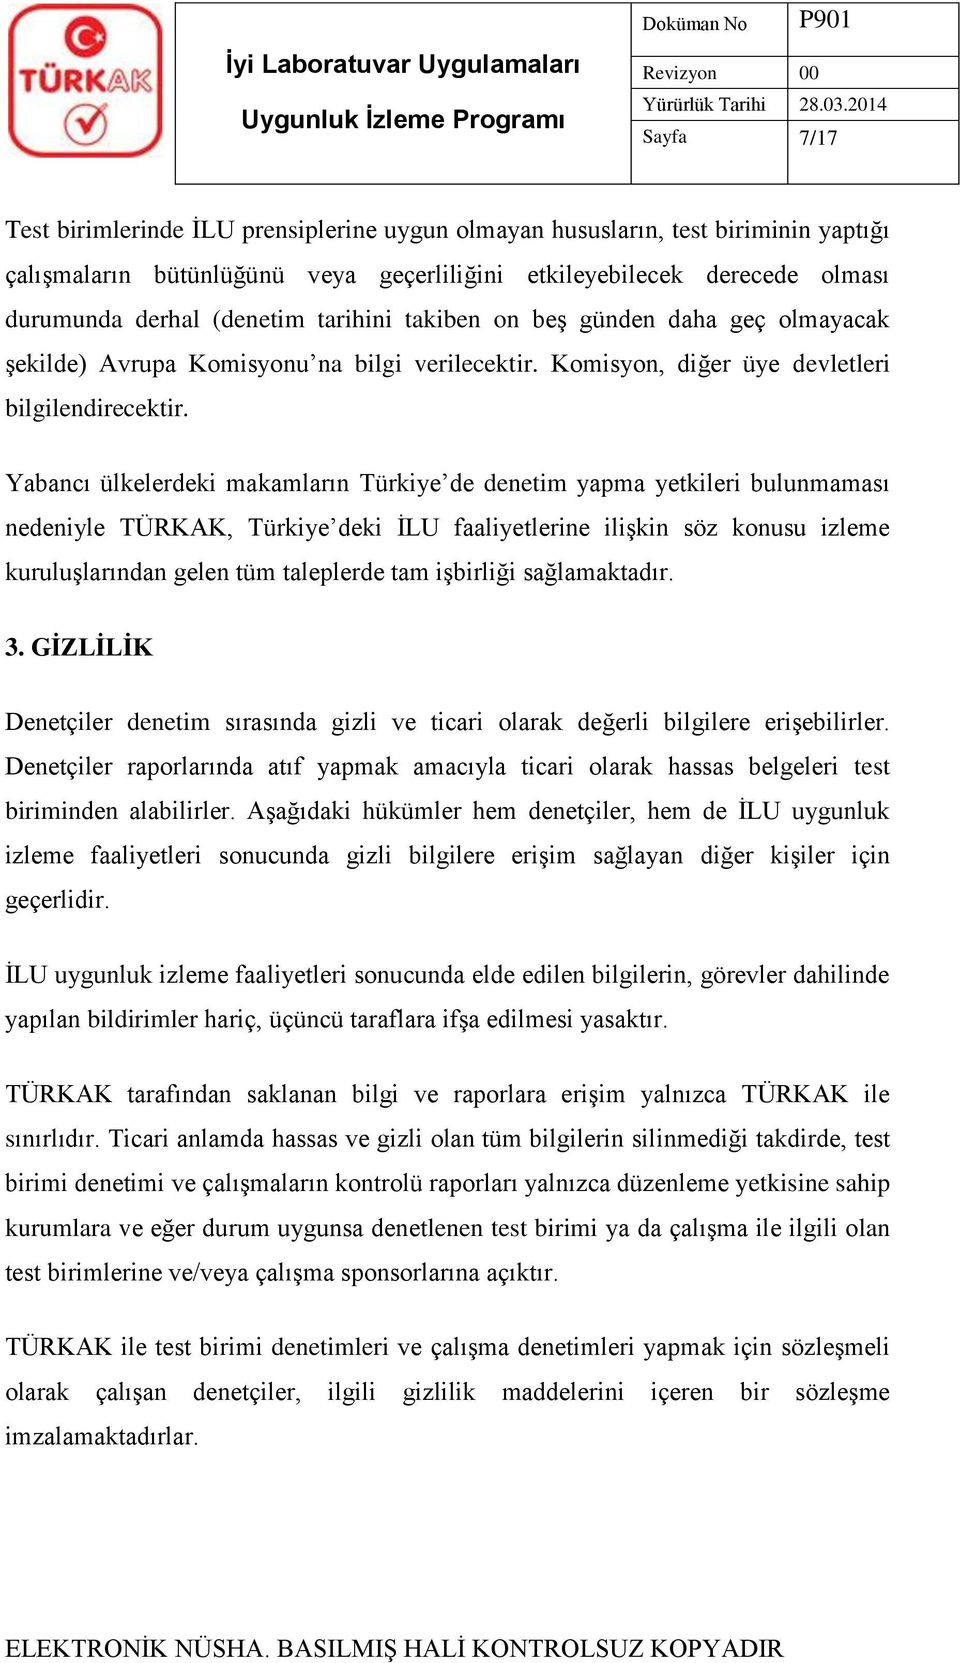 Yabancı ülkelerdeki makamların Türkiye de denetim yapma yetkileri bulunmaması nedeniyle TÜRKAK, Türkiye deki İLU faaliyetlerine ilişkin söz konusu izleme kuruluşlarından gelen tüm taleplerde tam